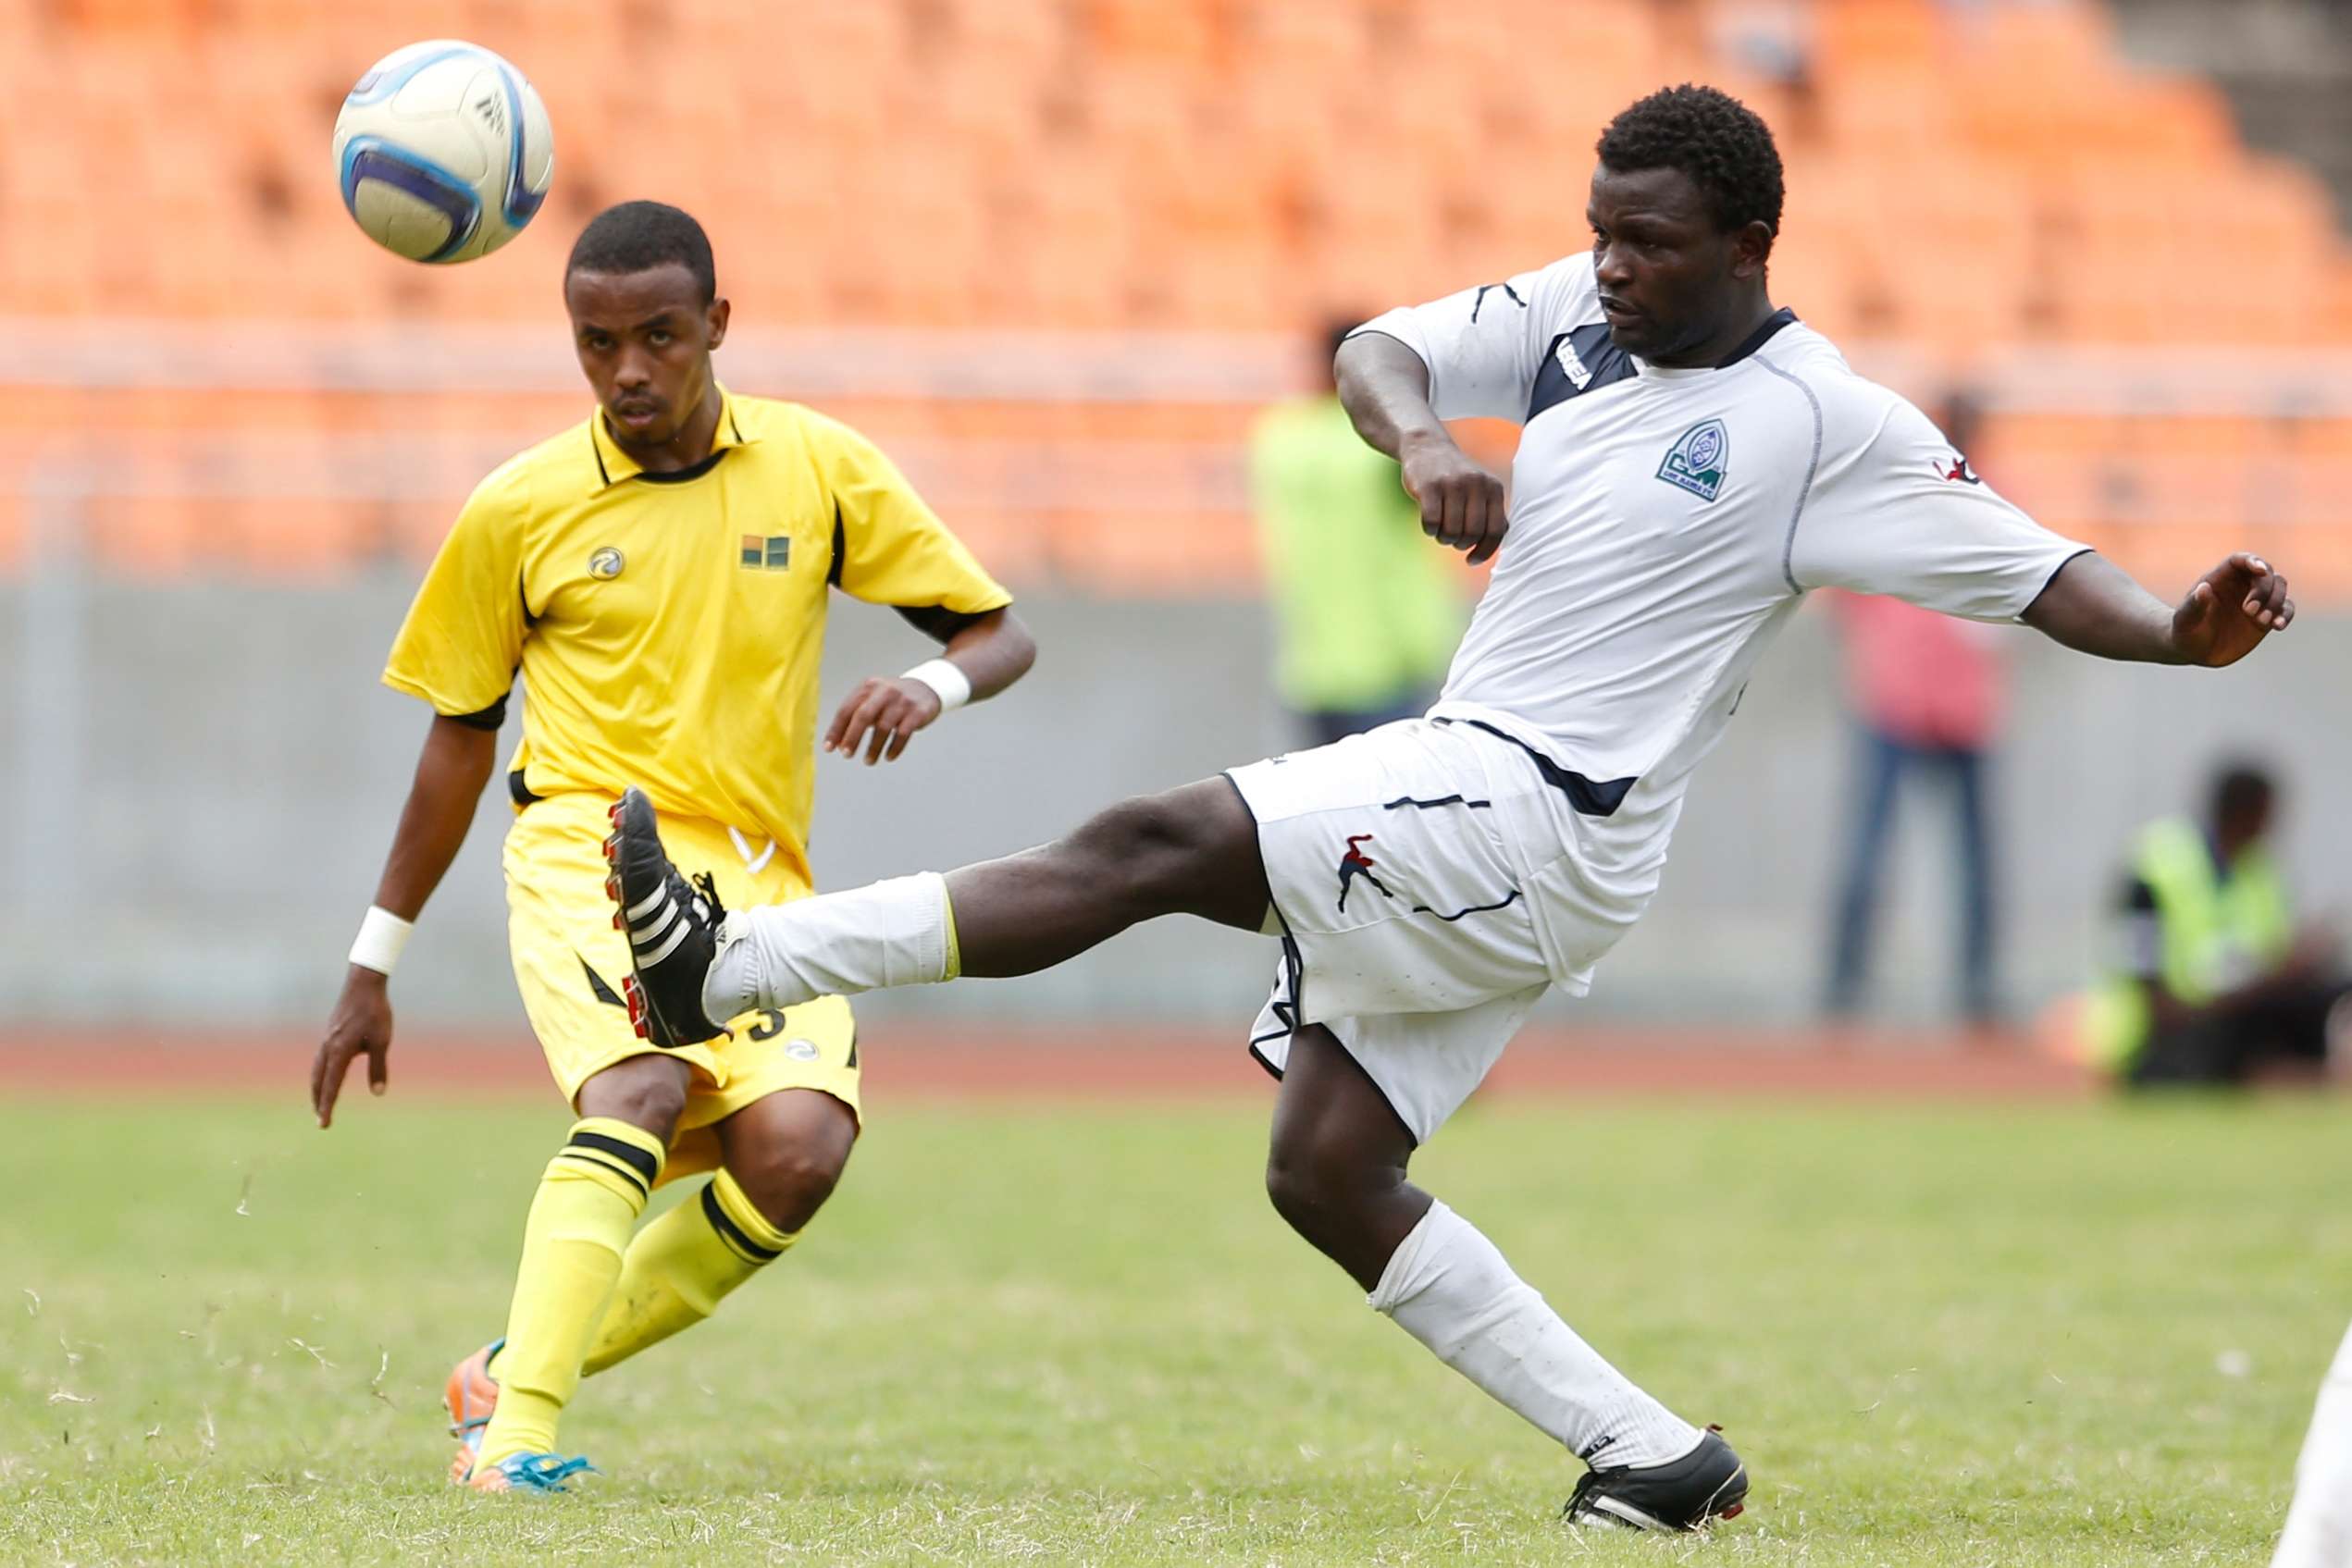 Mohamed Bouh Guedi of Telecom FC (L) vies against Enock Agwanda of Gor Mahia FC